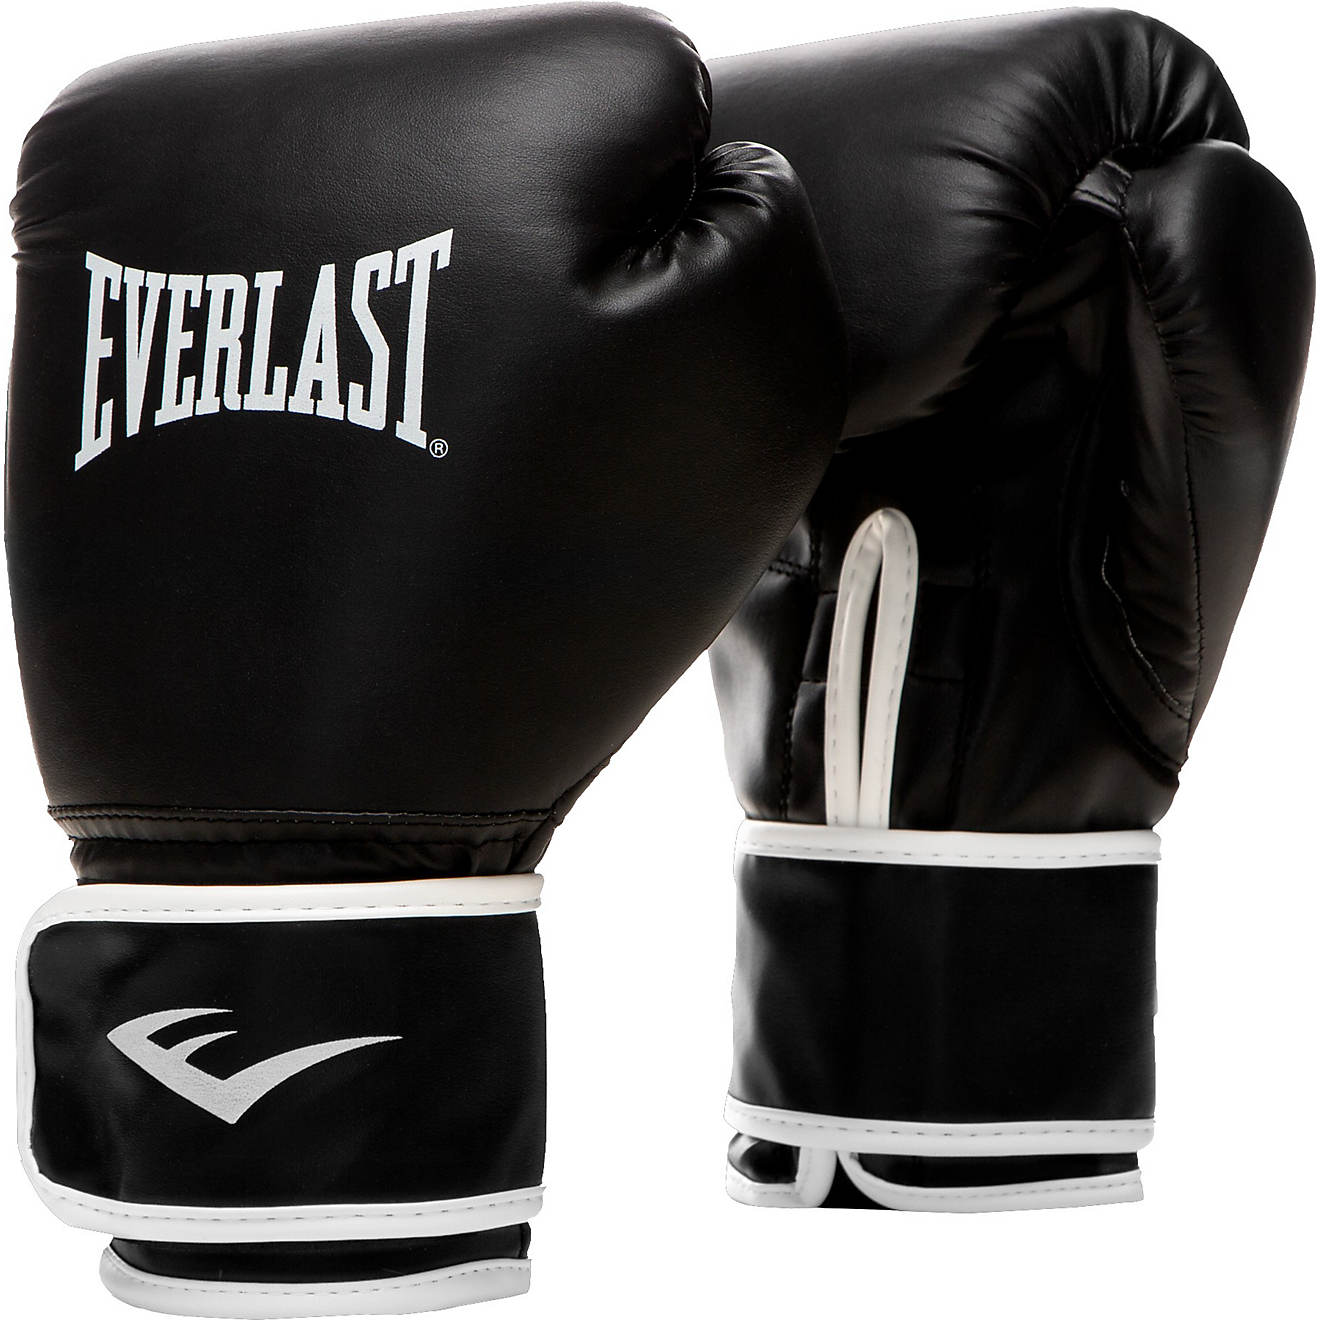 het beleid Stal echtgenoot Everlast Core2 Training Boxing Gloves | Academy